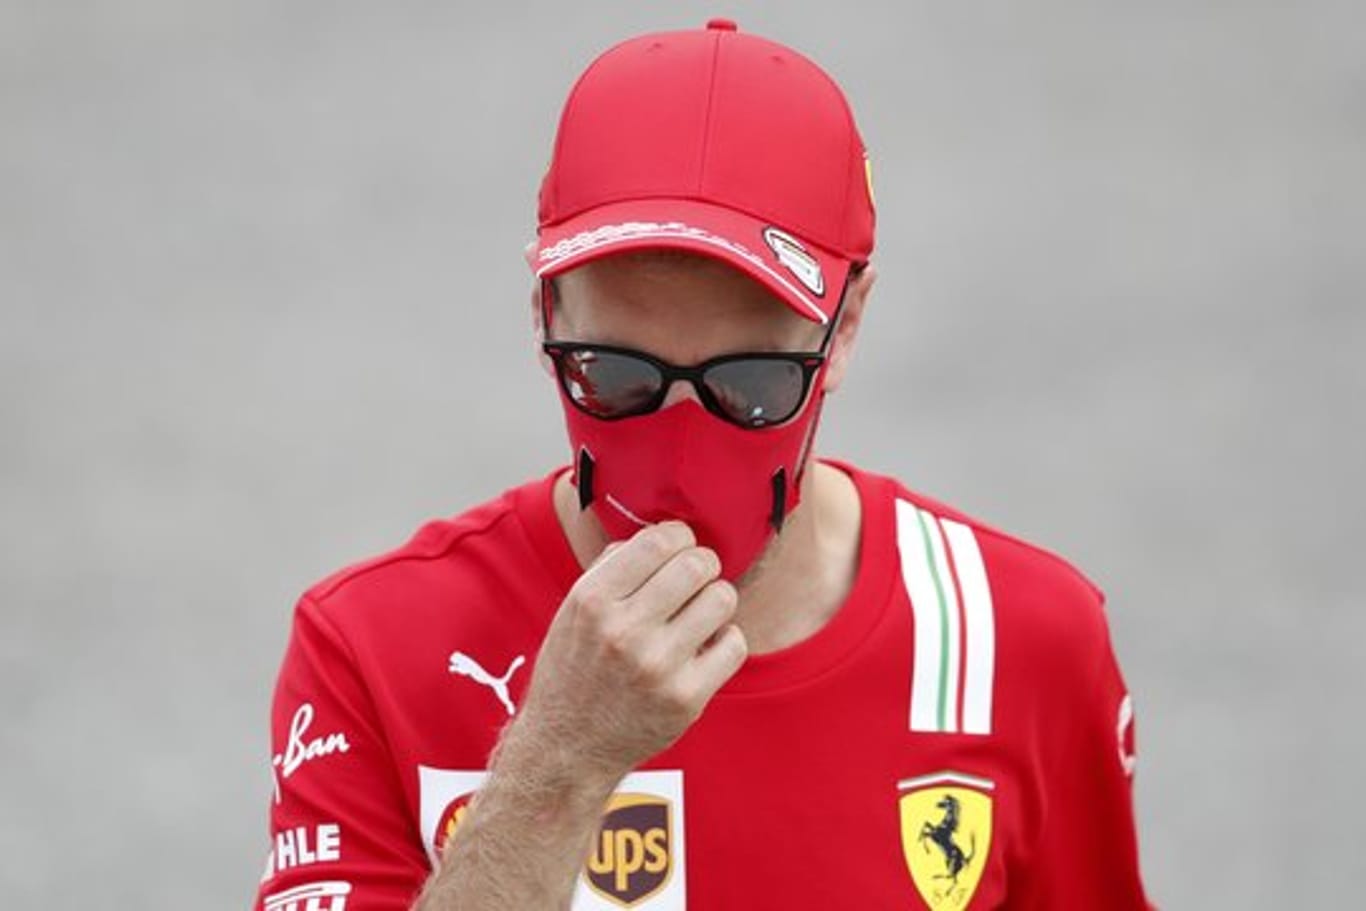 Entspannt mit Lesen abseits der Formel-1-Strecke: Ferrari-Pilot Sebastian Vettel.